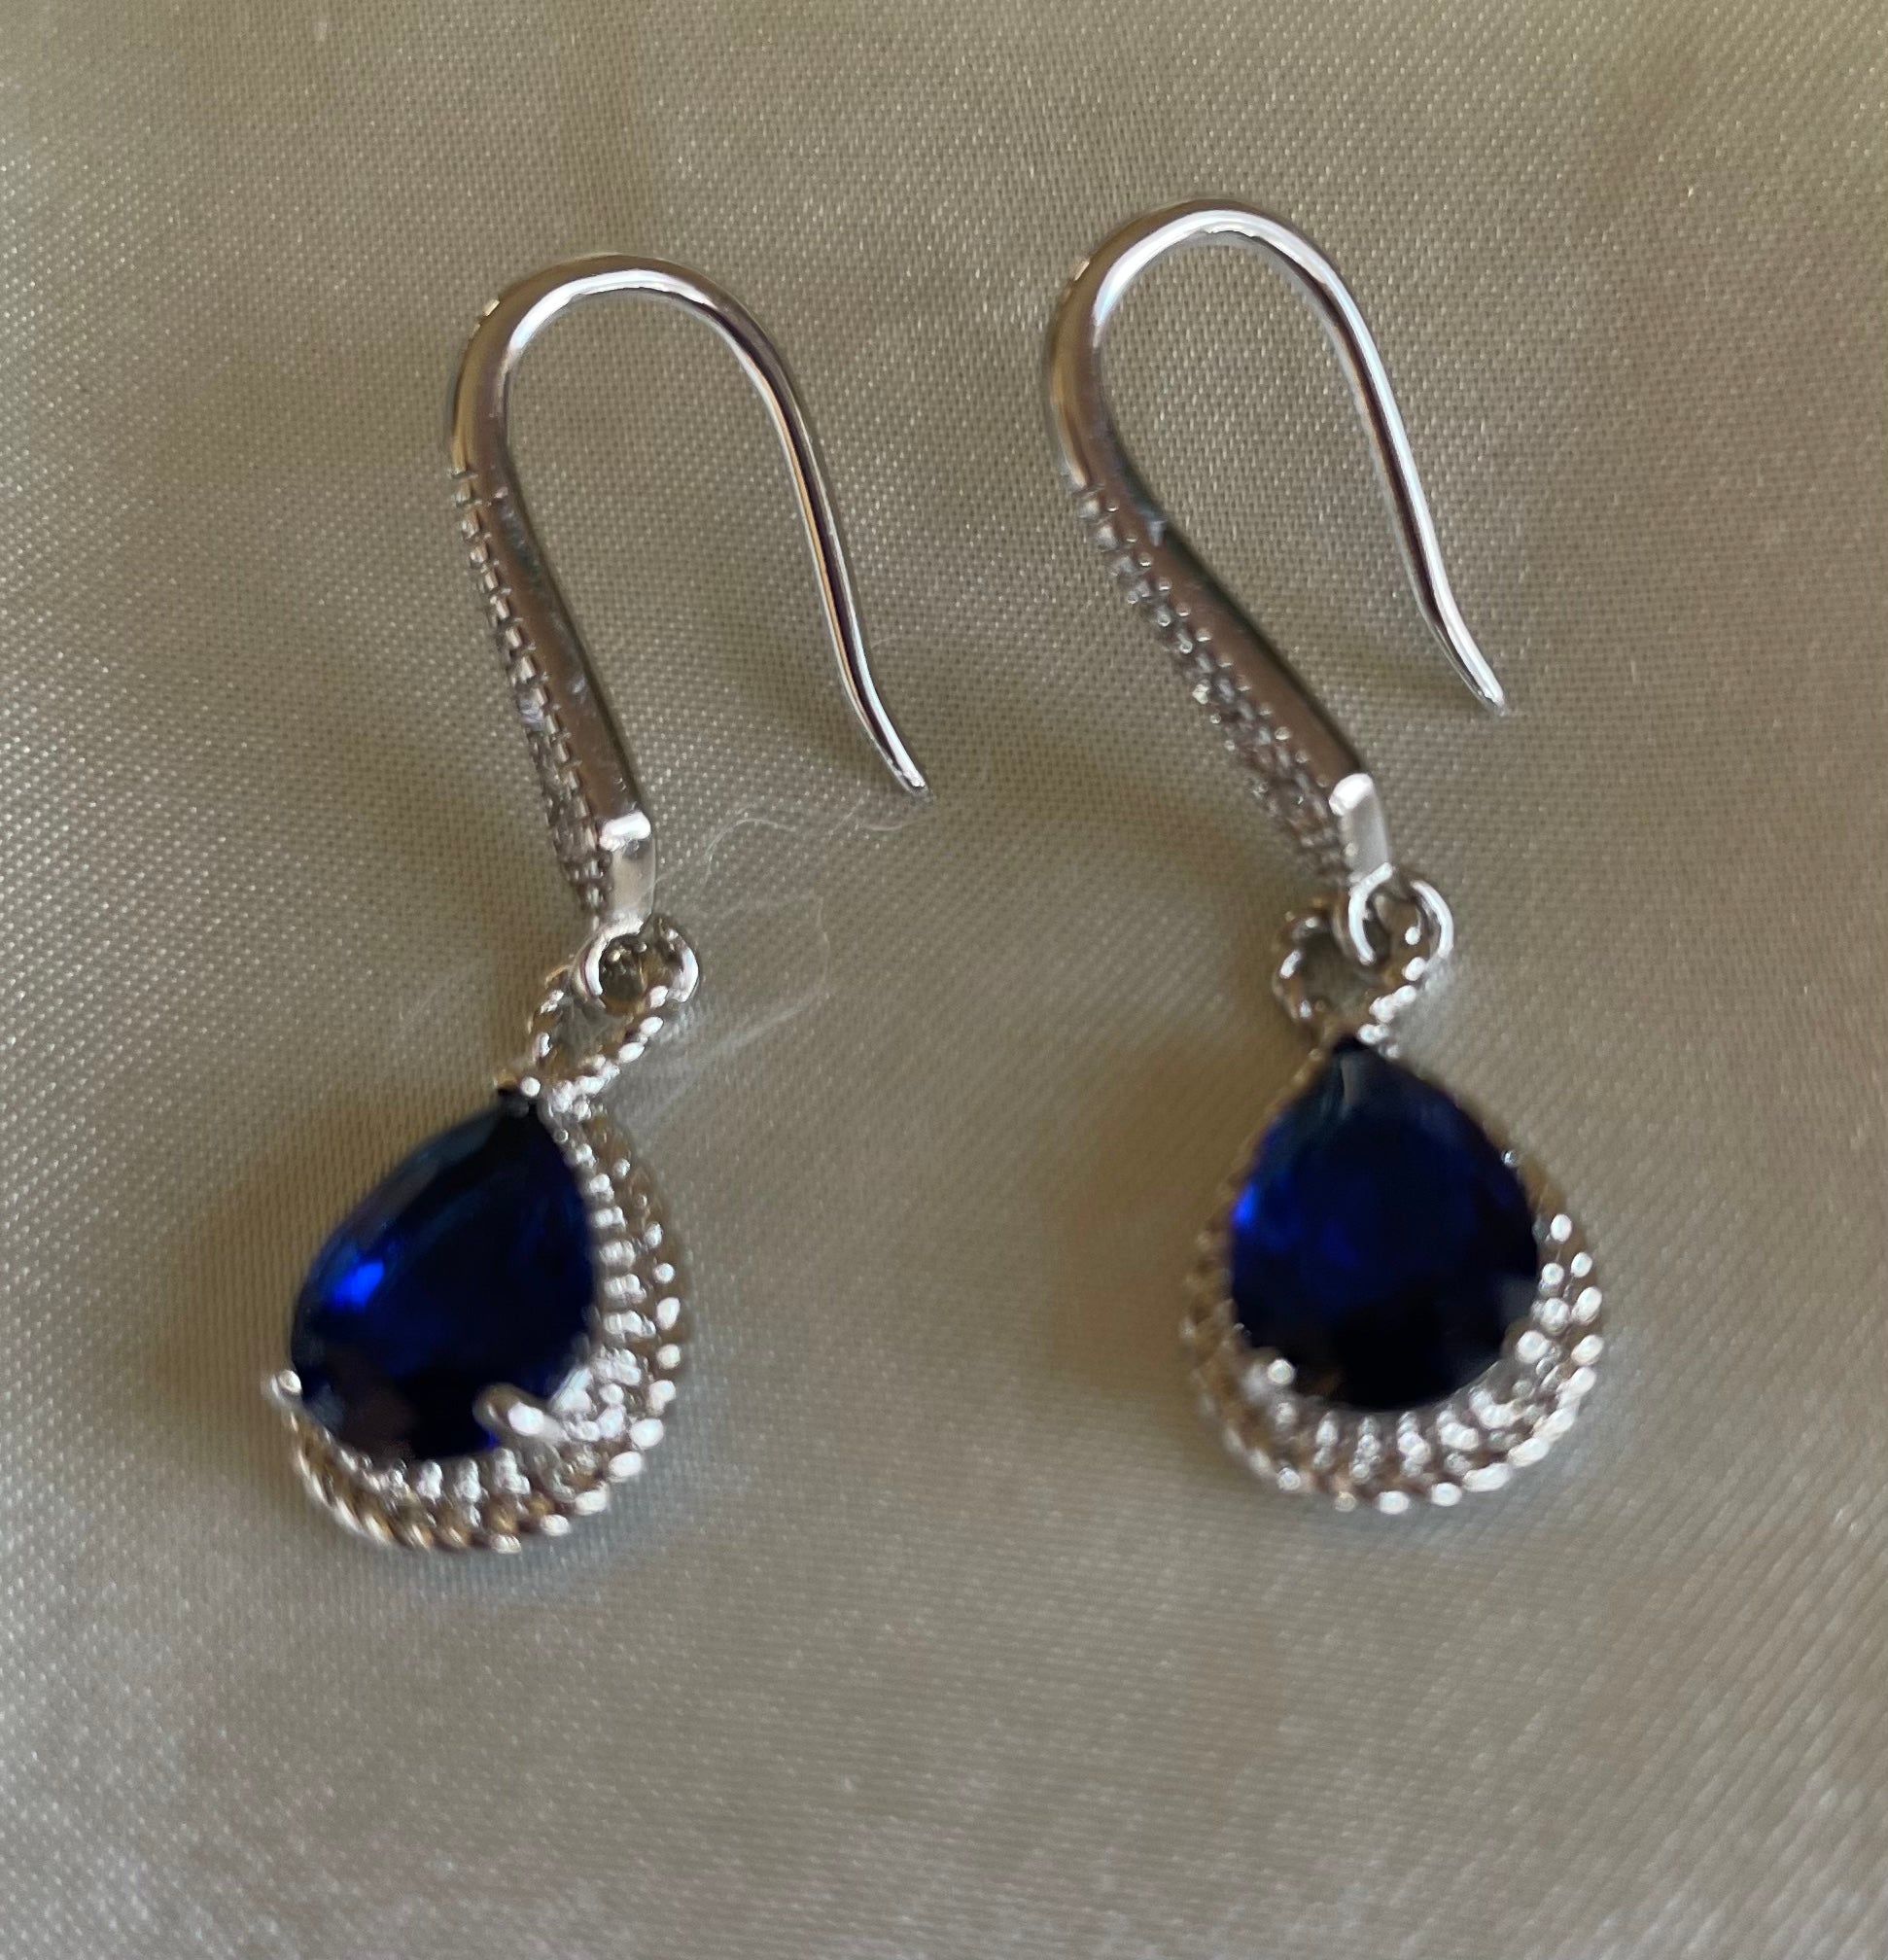 Blue Zironian Pierced Earrings 2000s 925 Silver Plated Blue Cubic Zirconian Fashion Classic Pierced Earrings